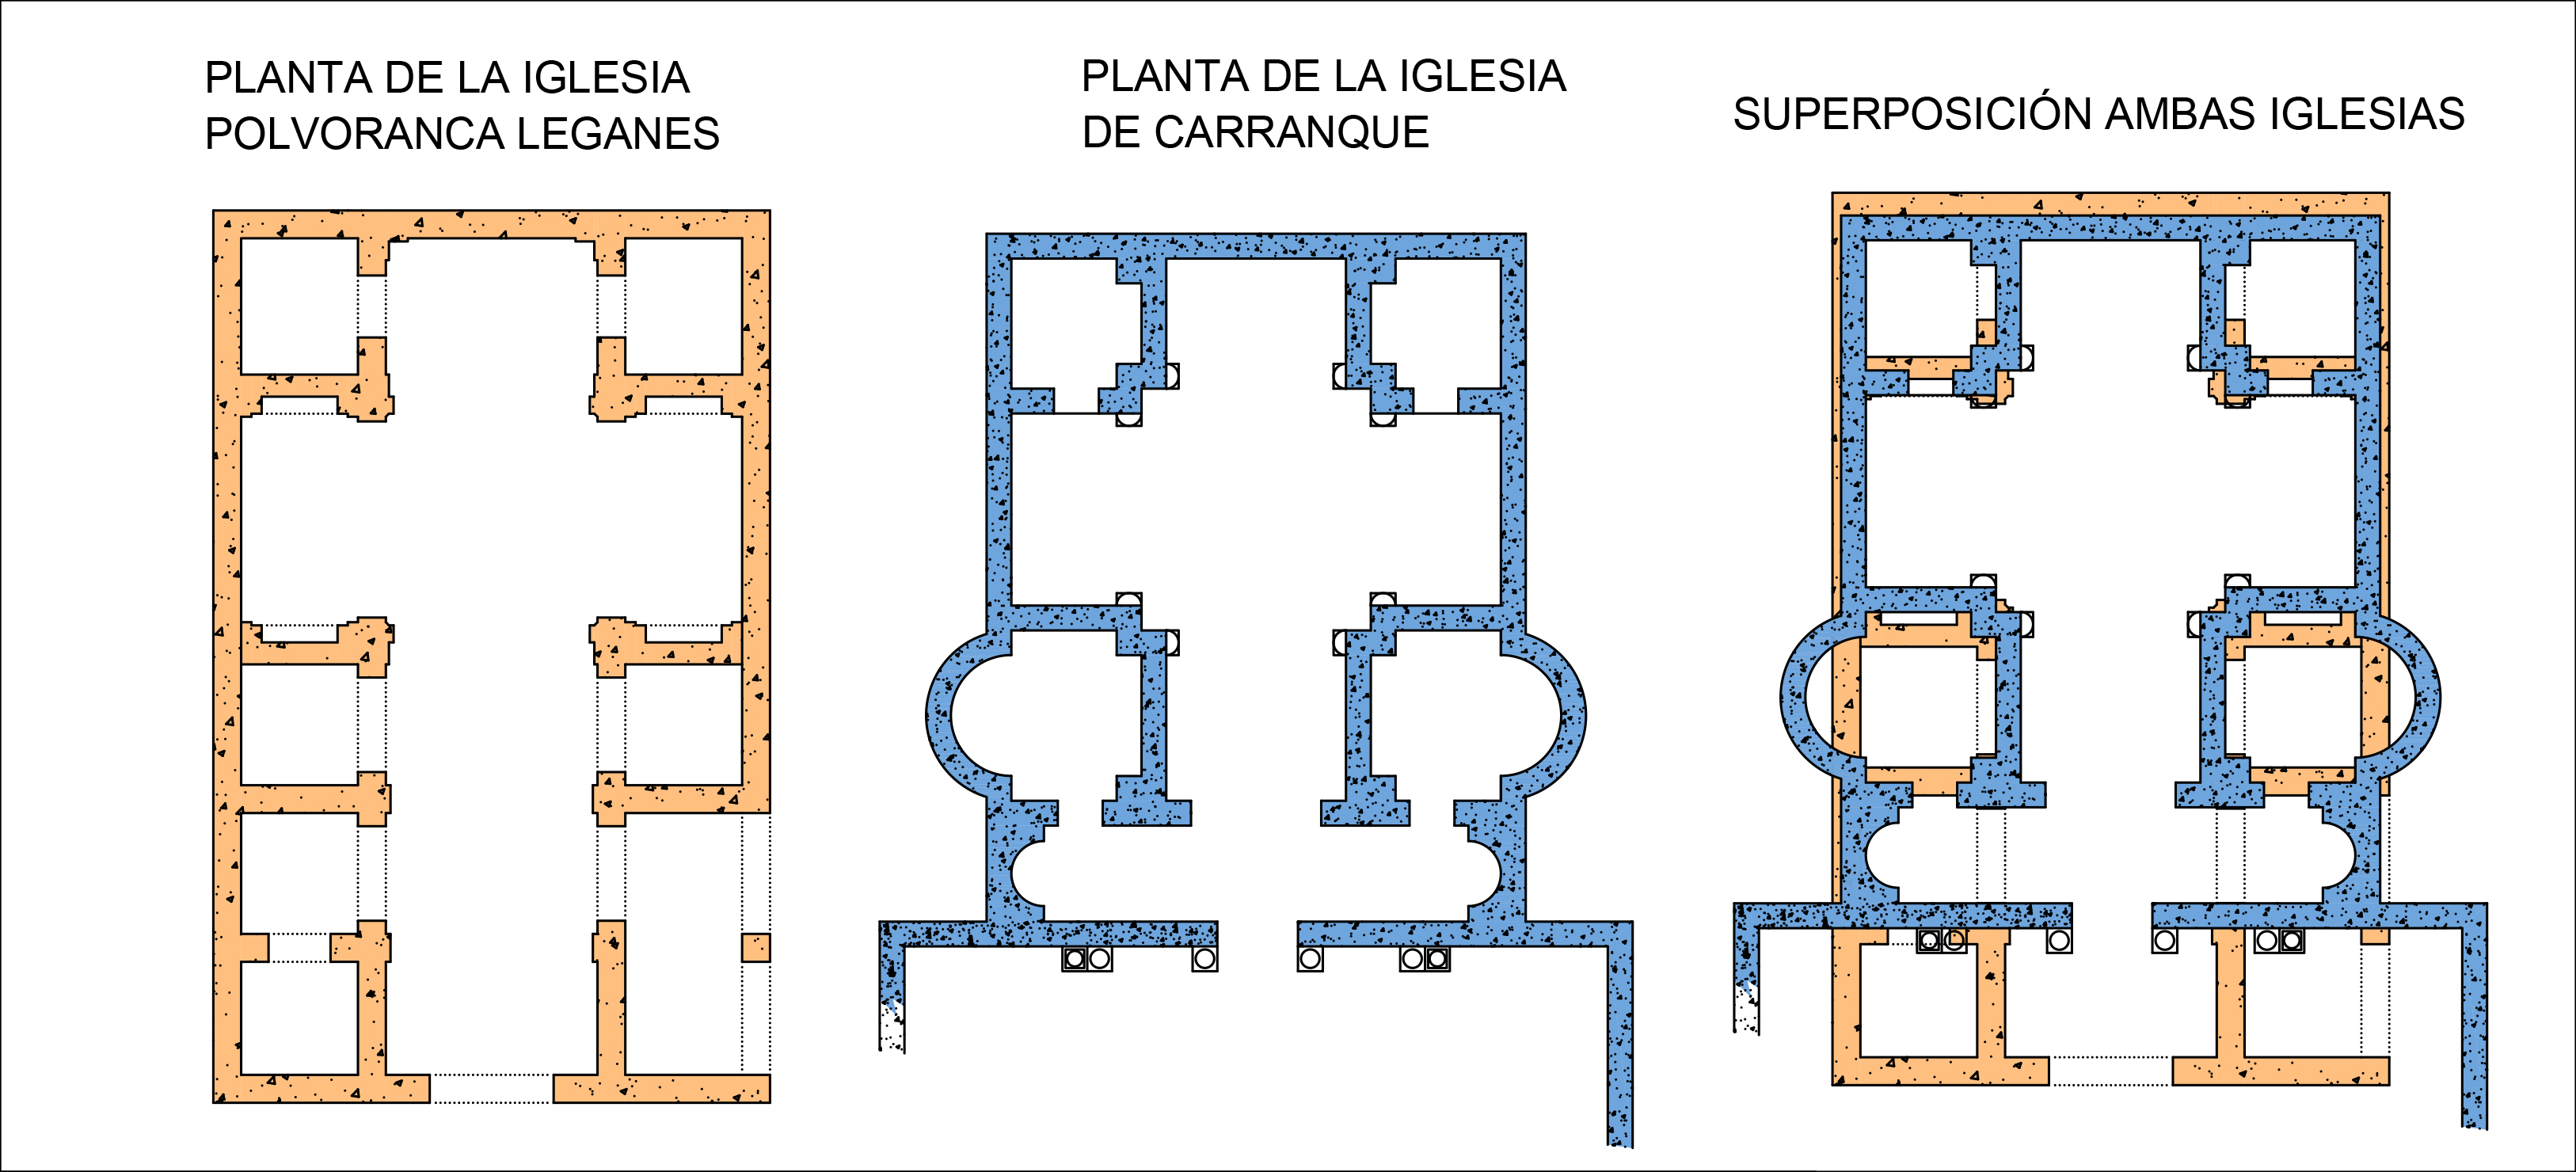 Superposición de los planos de planta de las dos iglesias.